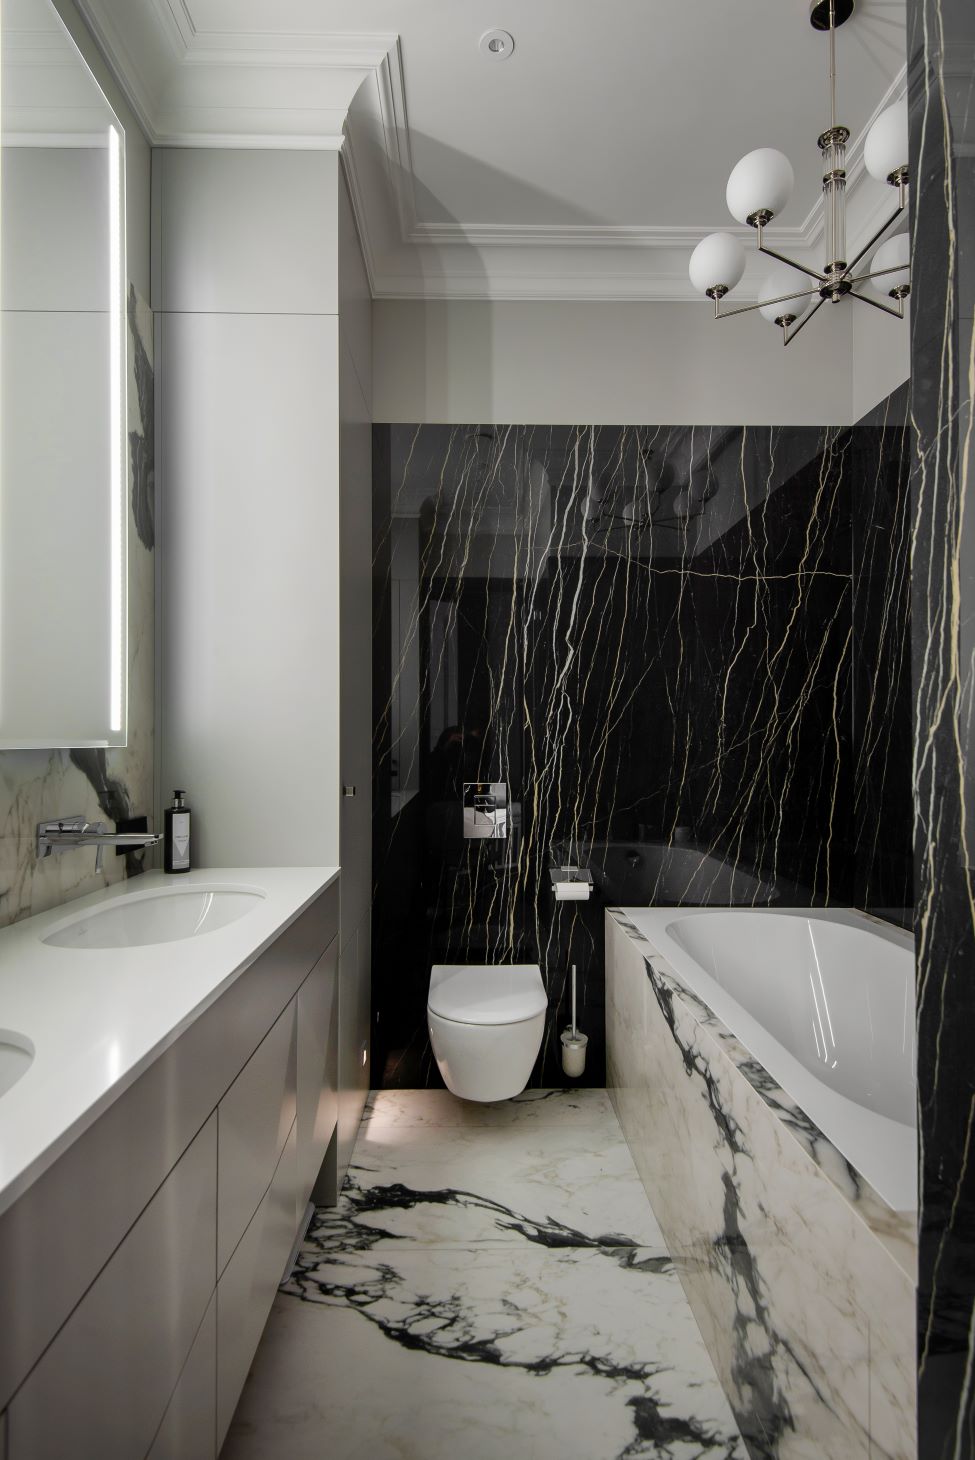 Klasisks dzīvoklis Rīgas centrā - tualete un vanna ar marmora izklājumu un flīzēm